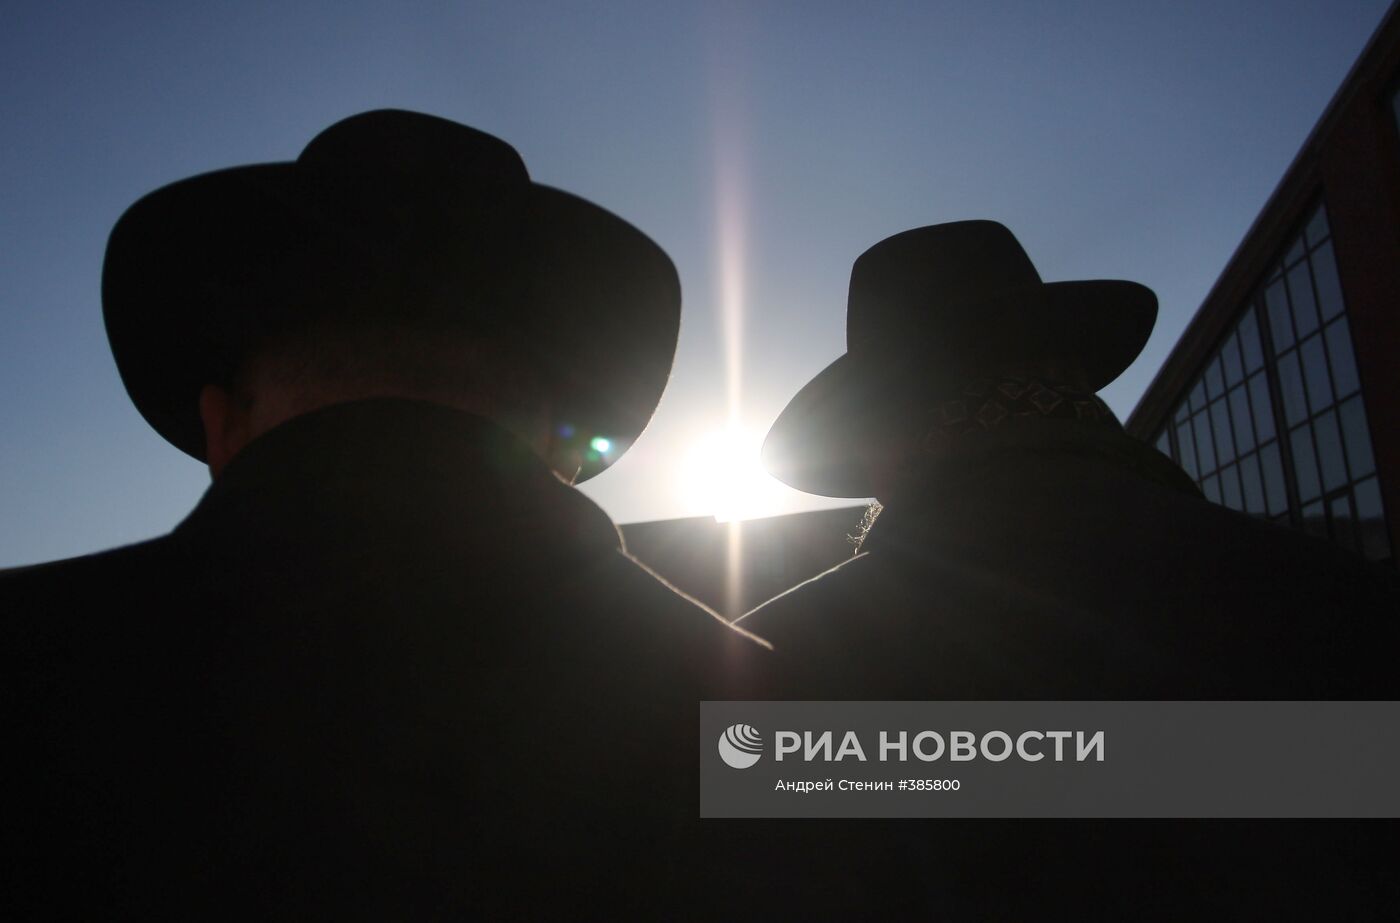 Церемония "благословения солнца" в Московском еврейском центре